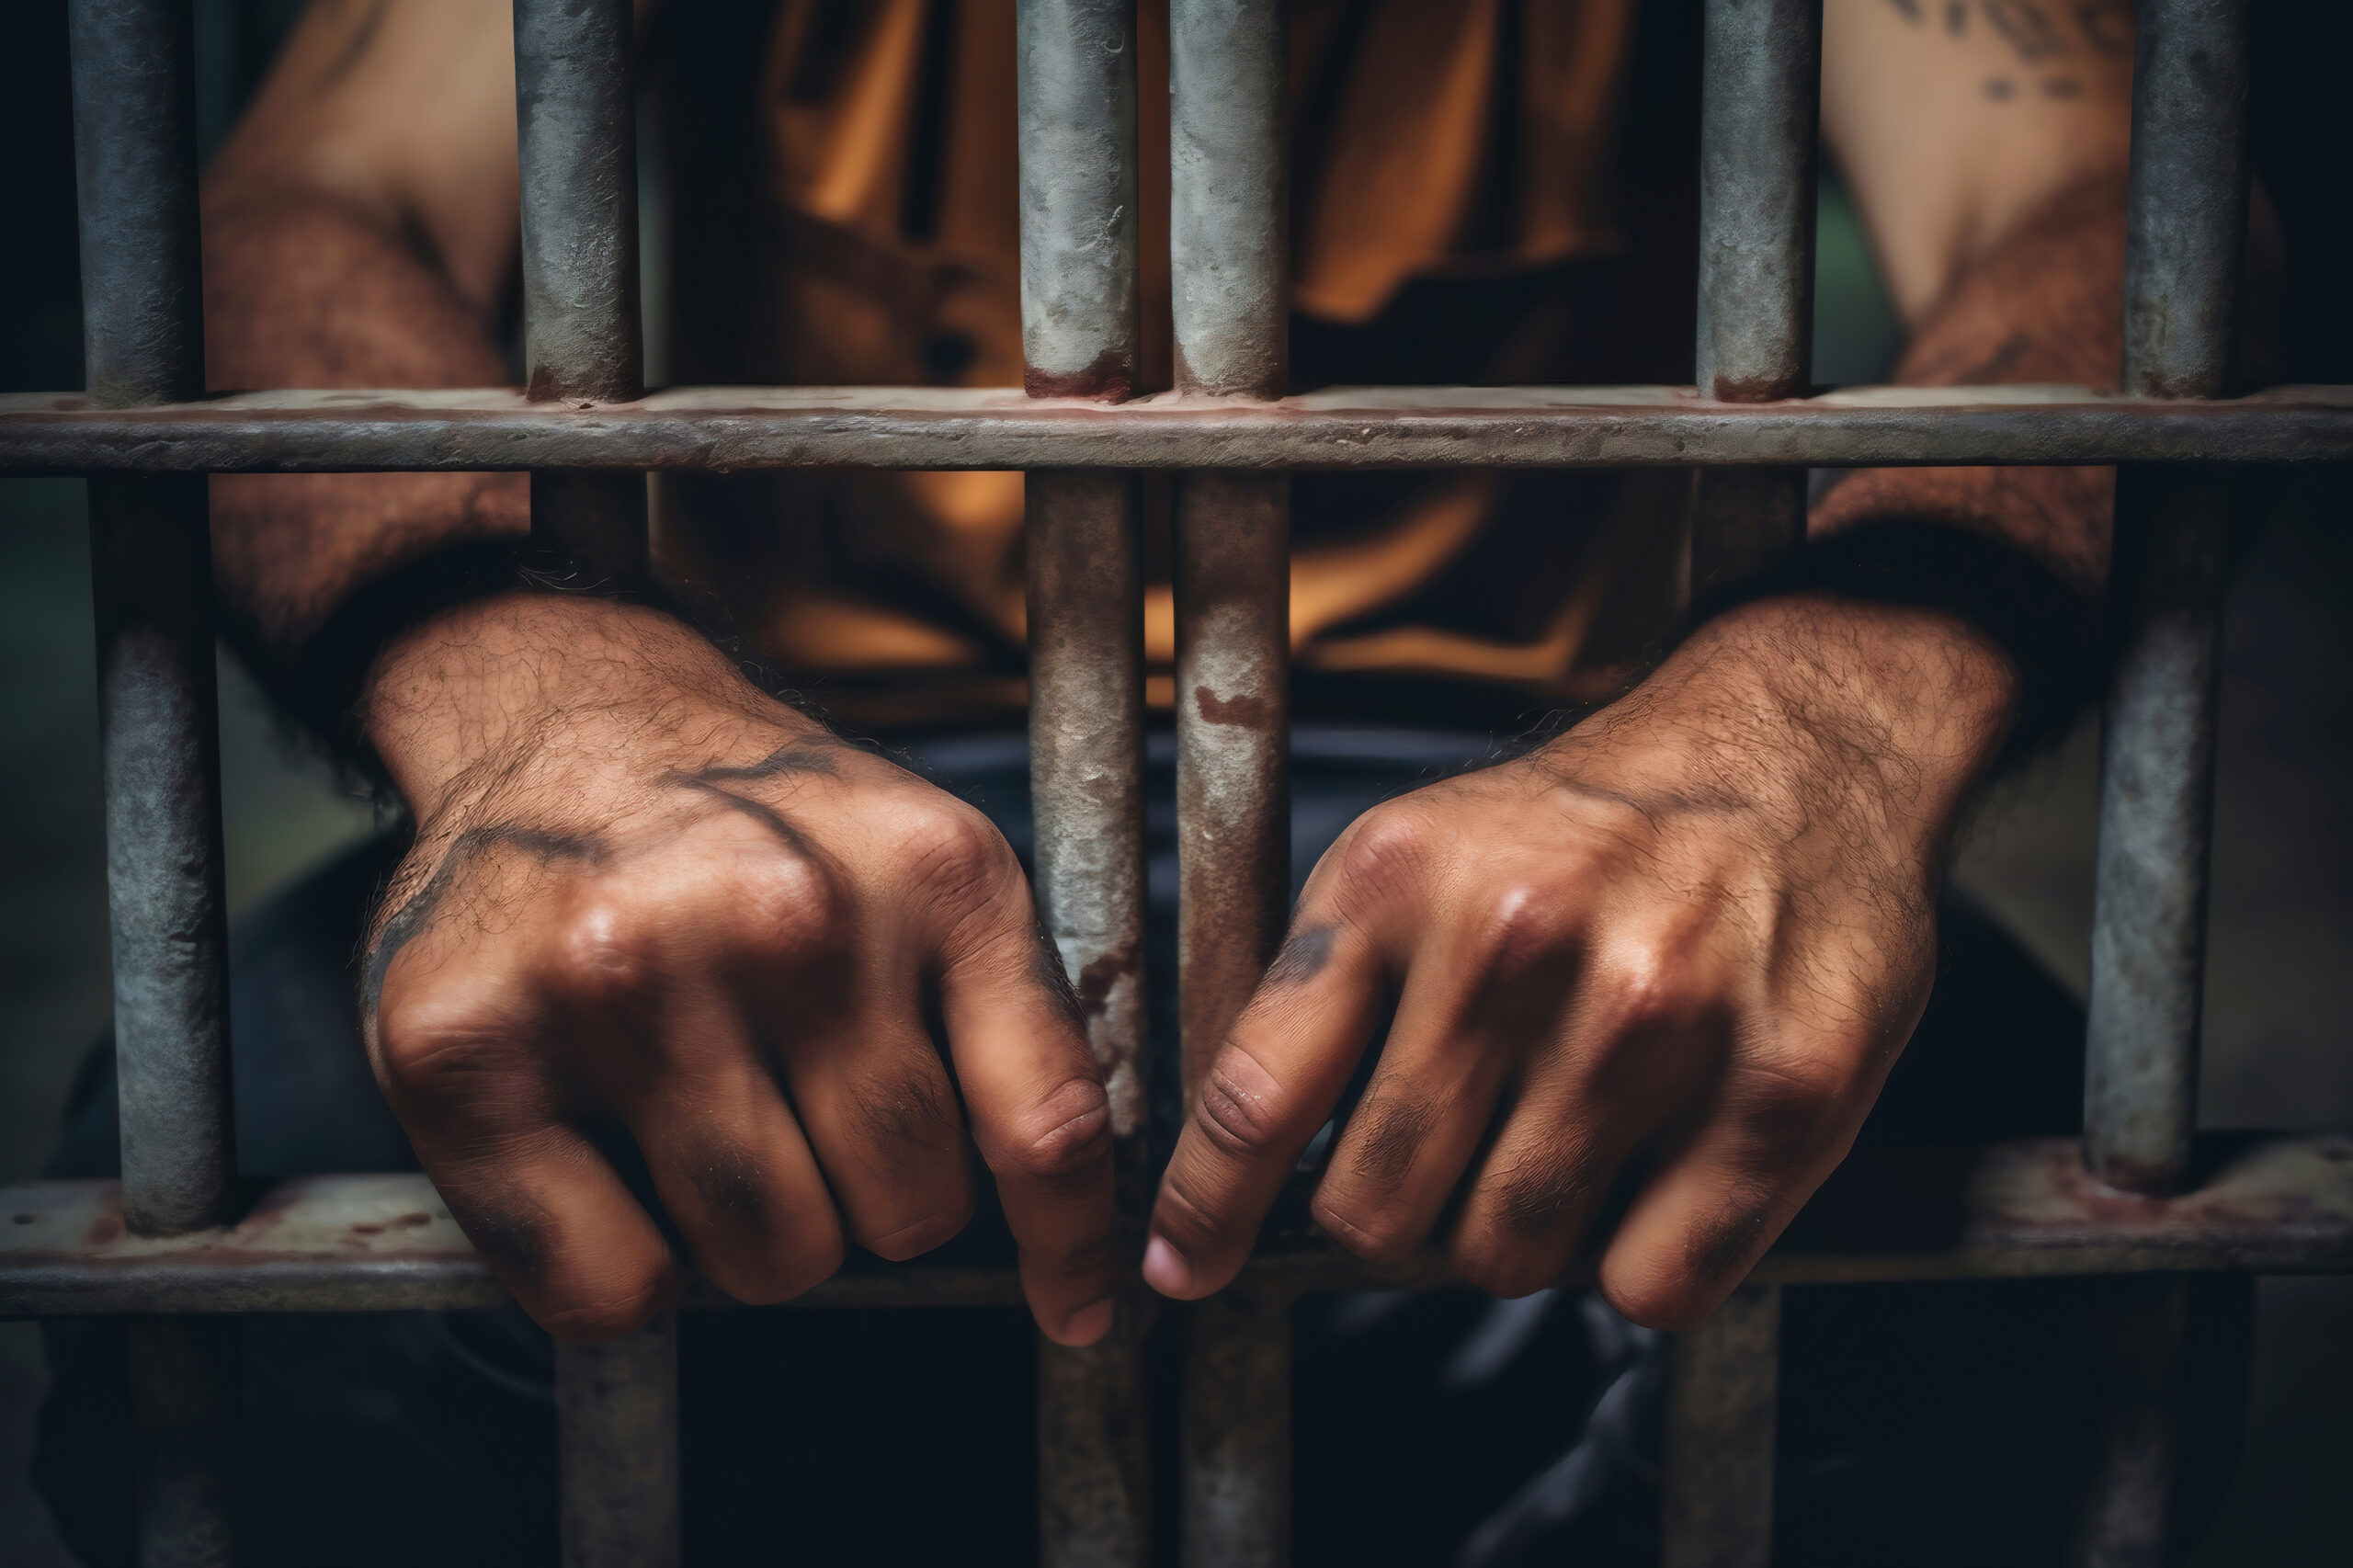 Salarié incarcéré… qu’ai-je le droit de faire? | Webzine Cerfrance ...